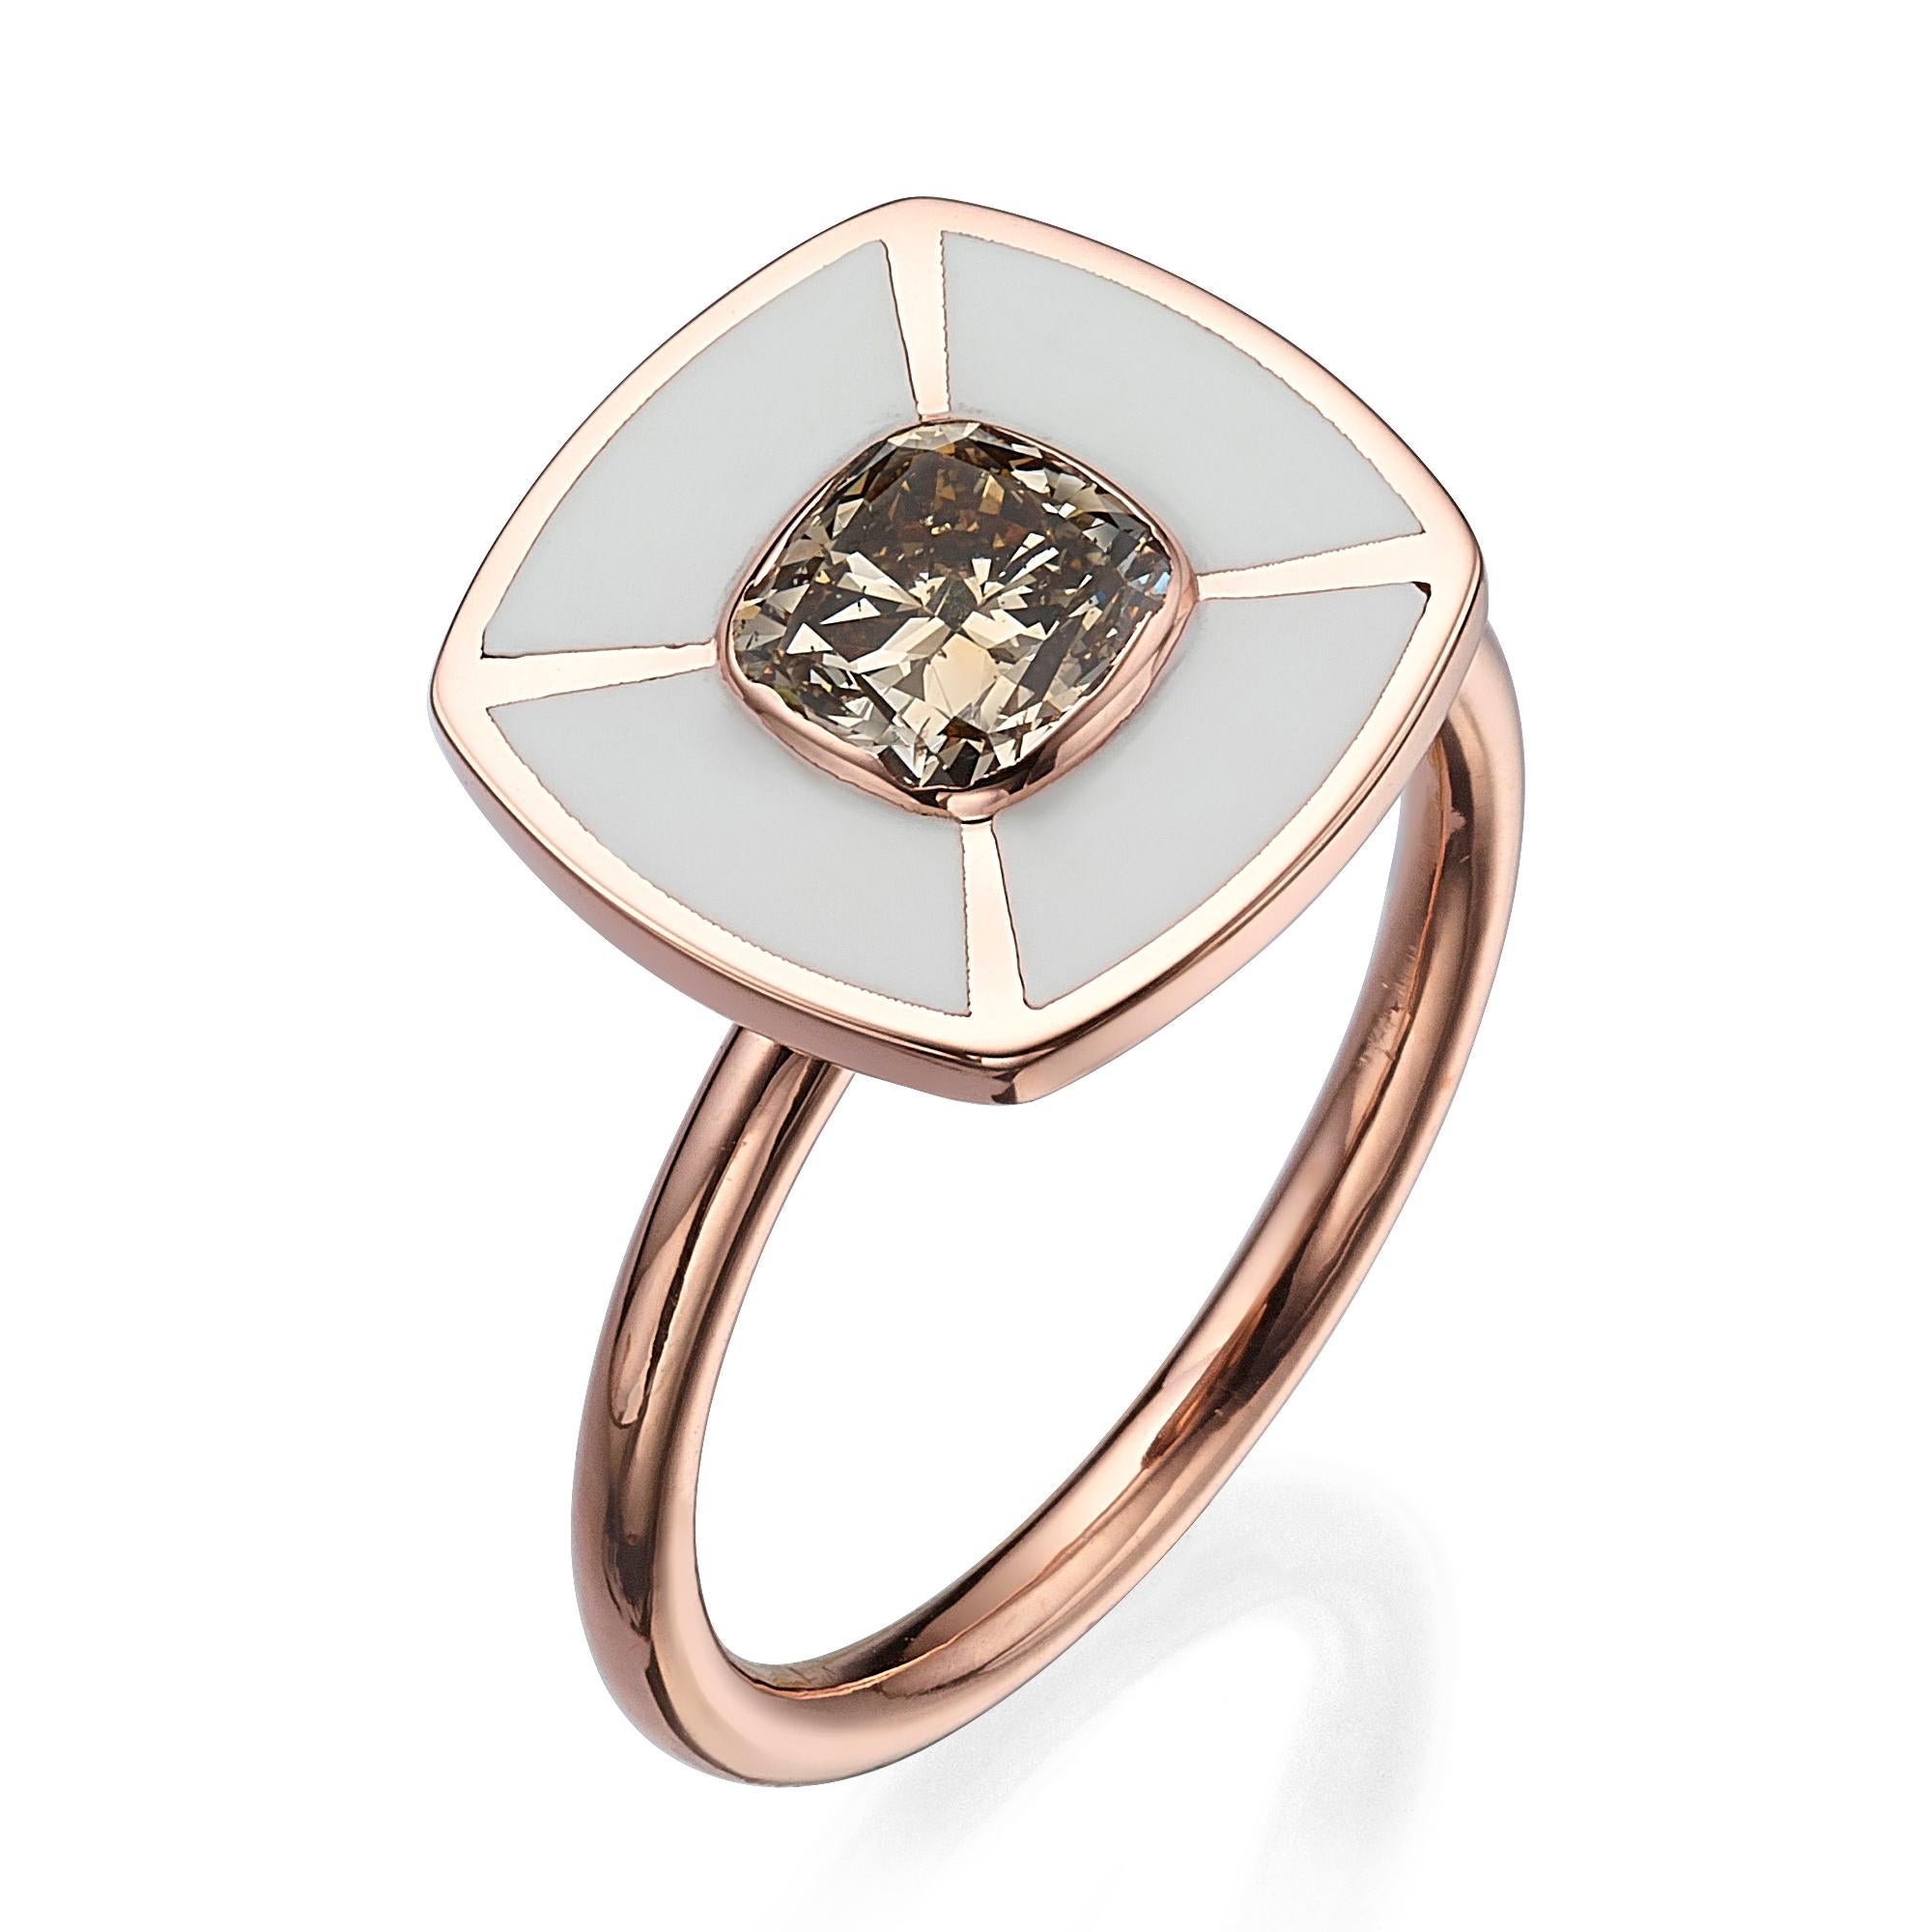 SKU# 4006134

Wir stellen Ihnen ein exquisites Schmuckstück vor, das Ihr Herz erobern wird - einen kissenförmigen Diamantring aus 18 Karat Roségold mit weißer Emaille. Dieser atemberaubende Ring hat als Mittelstein einen faszinierenden